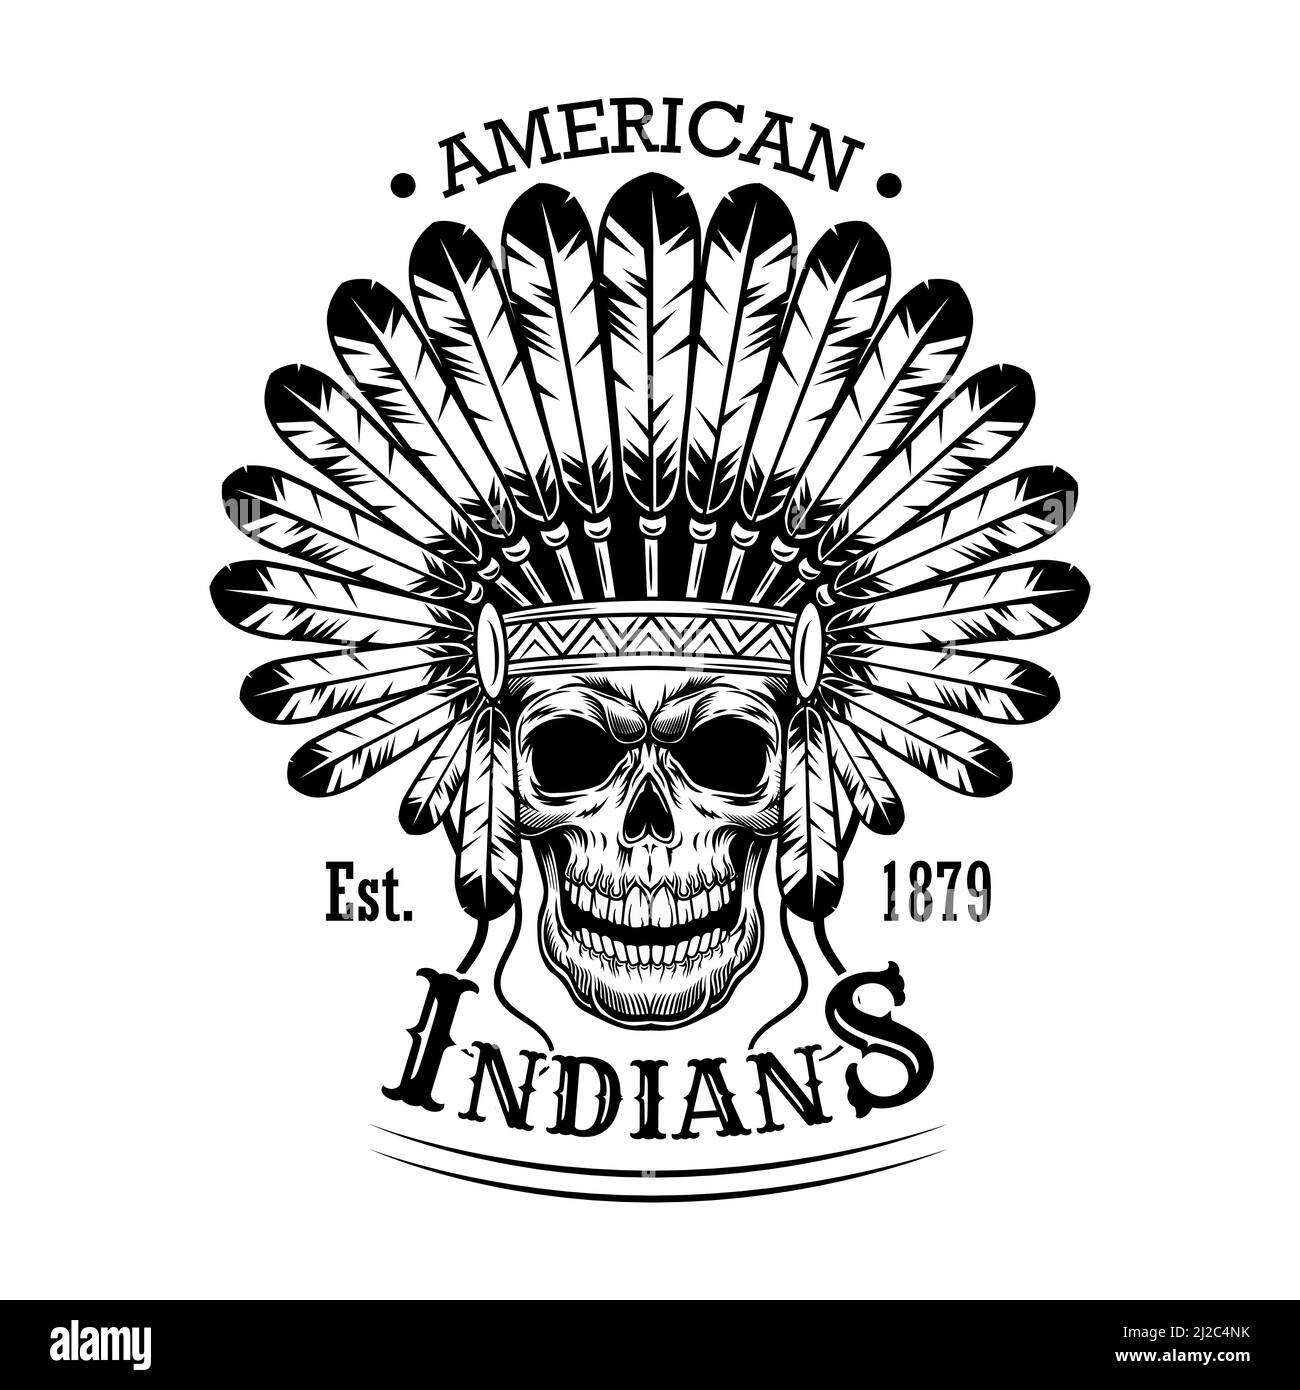 American Indian Schädel Vektor Illustration. Kopf aus Skelett mit Federkopfschmuck und Text. Indianer und Red Indian Konzept für Embleme oder la Stock Vektor